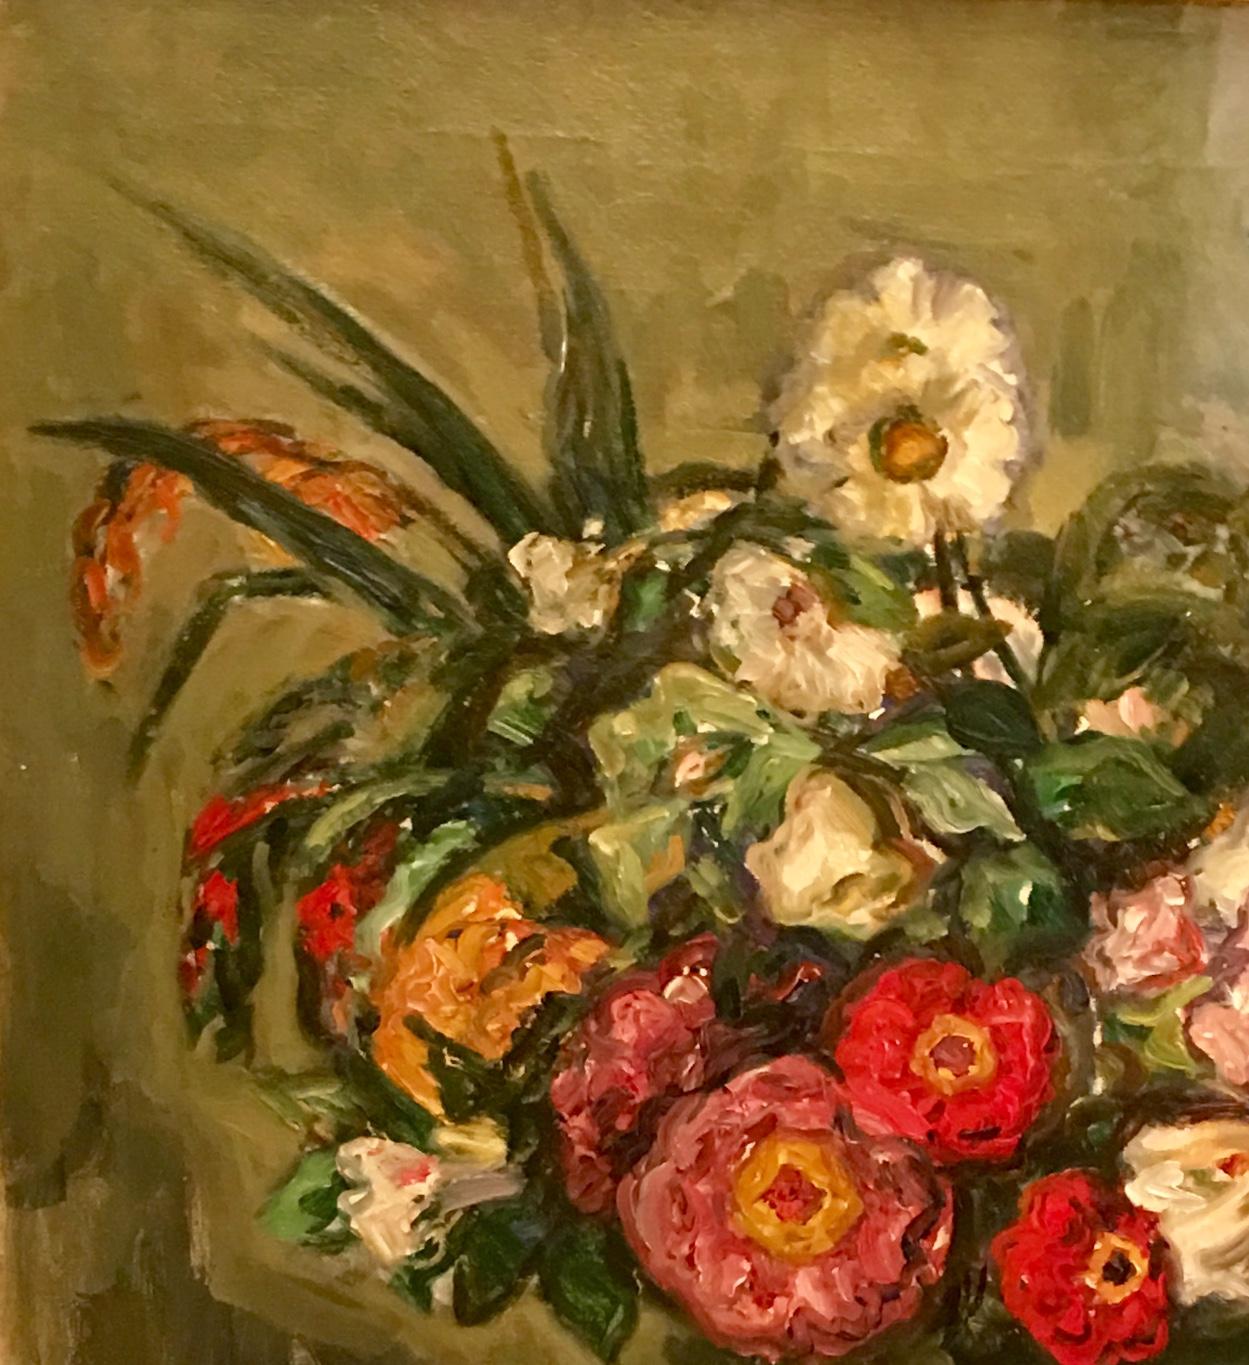 Vivement colorée et classiquement composée, mais peinte librement, cette peinture originale de nature morte à l'huile sur toile de fleurs dans un vase sur une table est un bel exemple du travail du célèbre peintre impressionniste américain décédé,